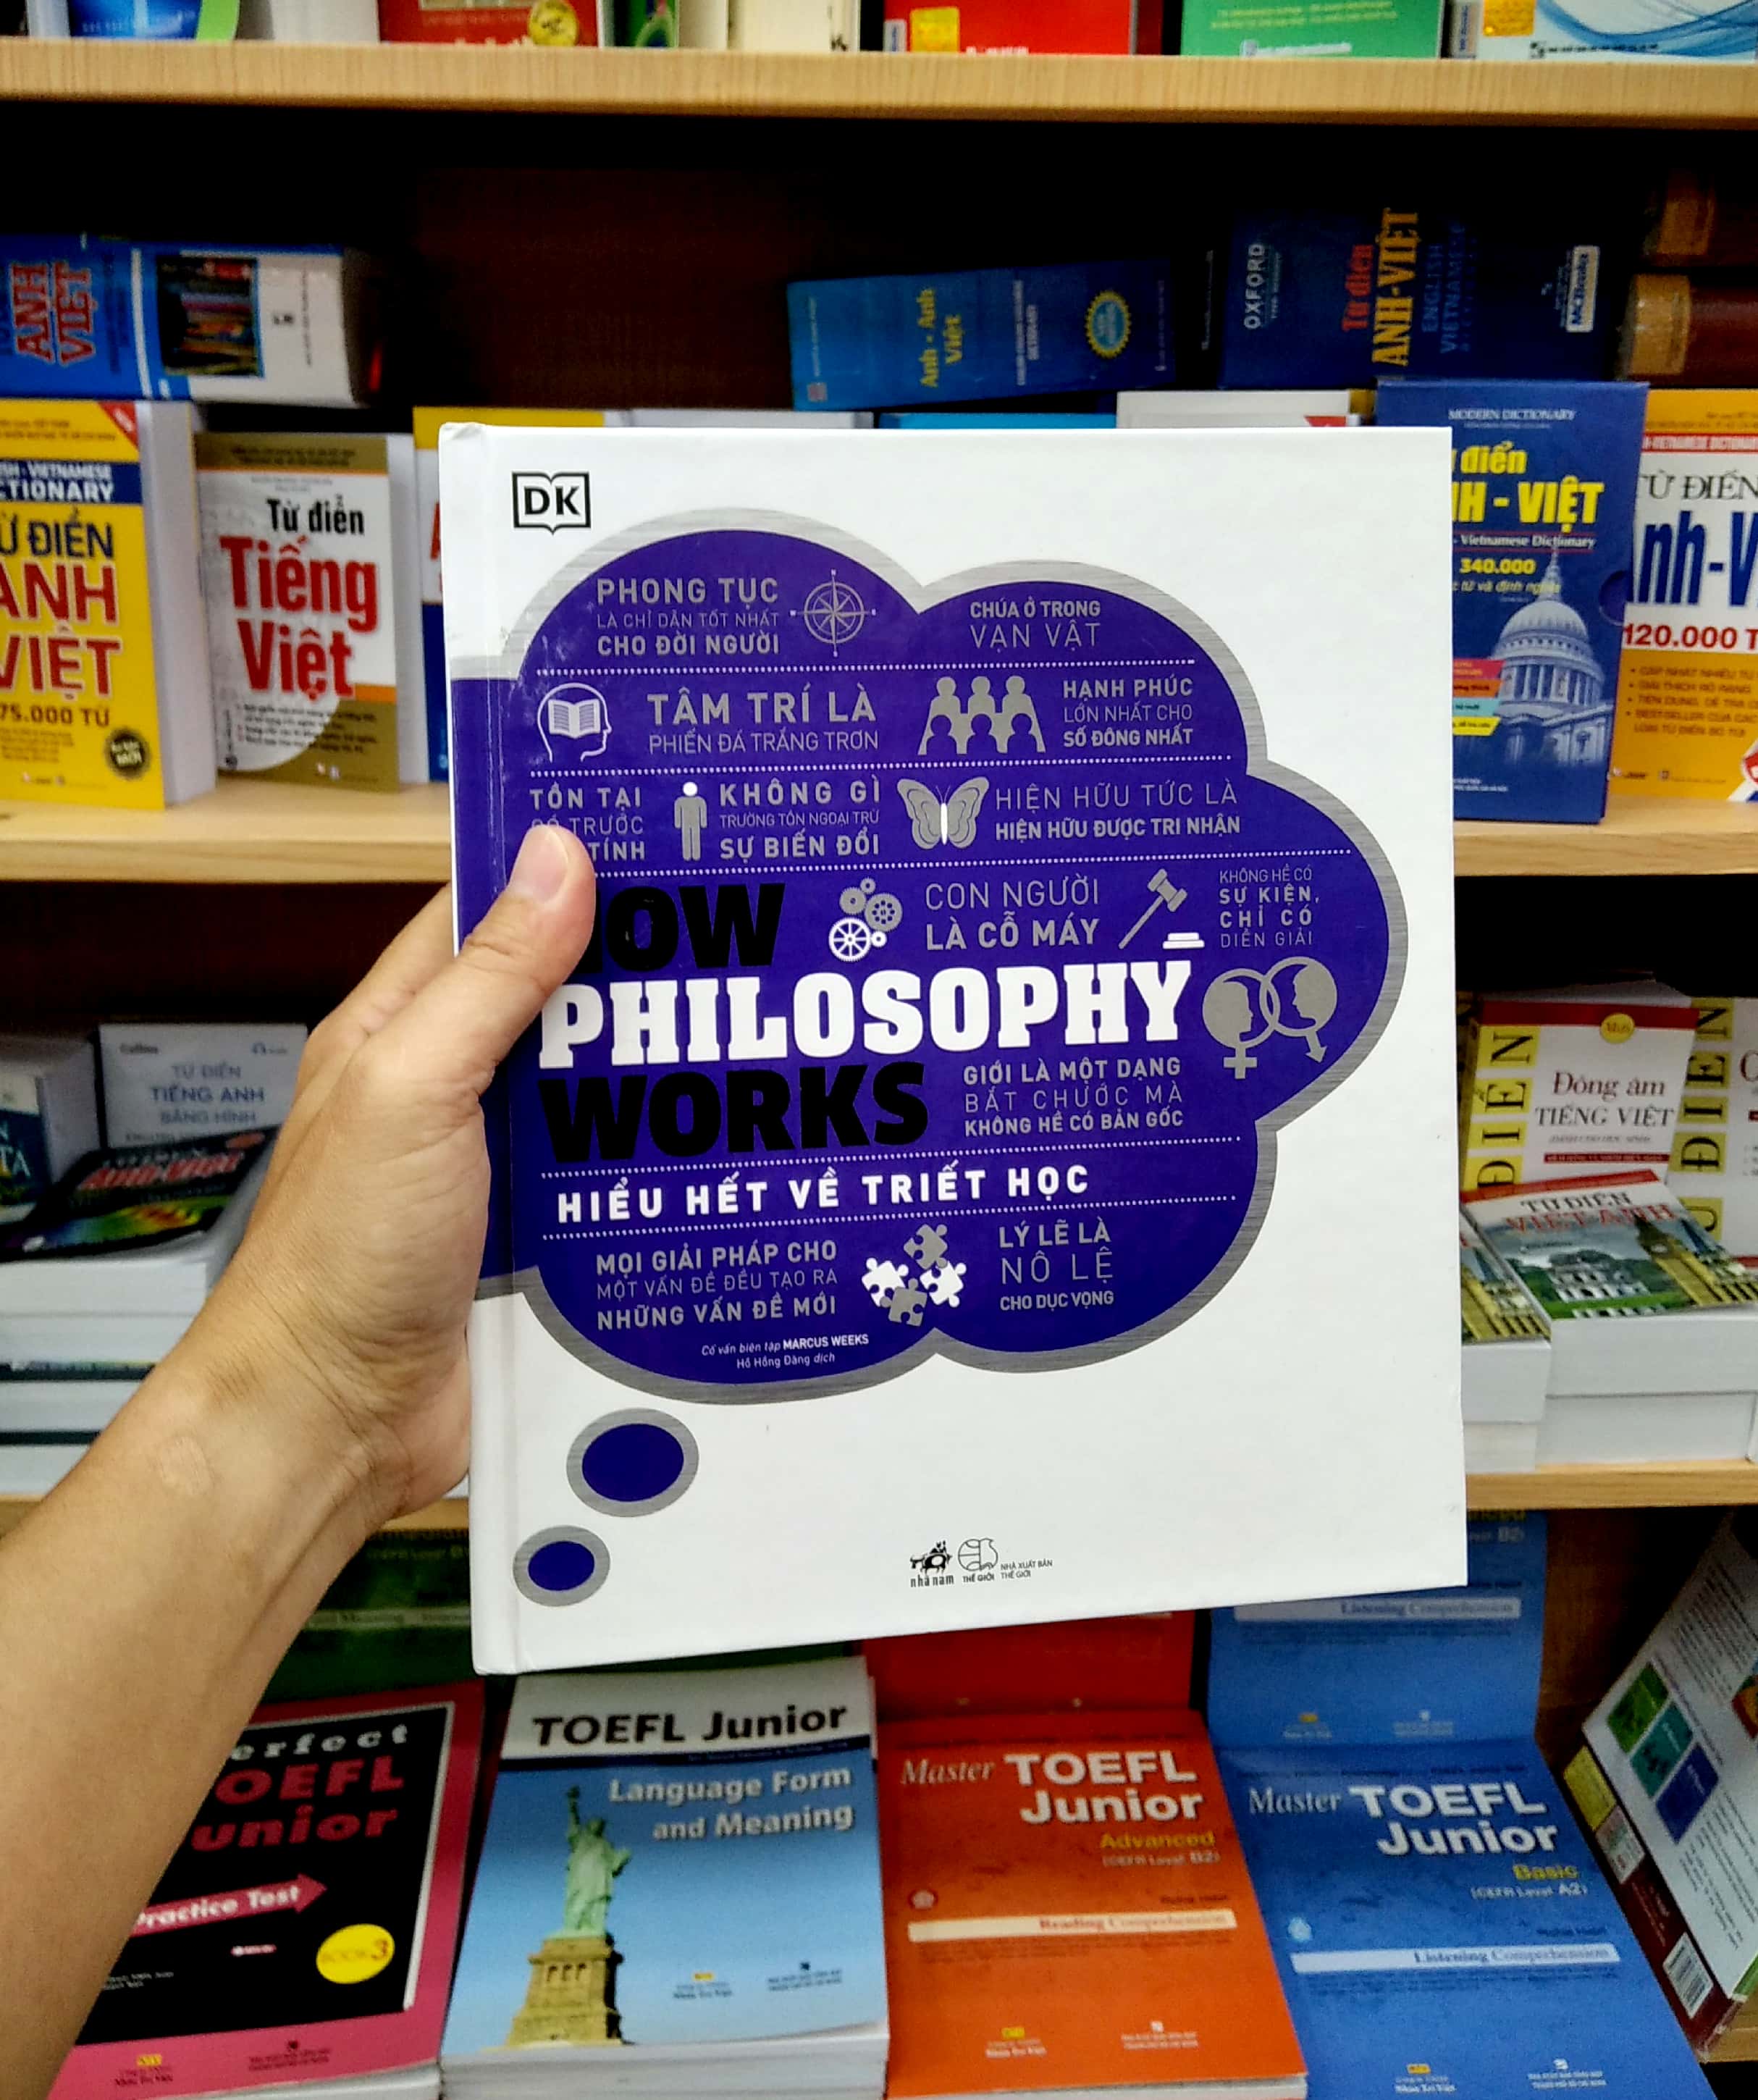 How Philosophy Works - Hiểu Hết Về Triết Học PDF